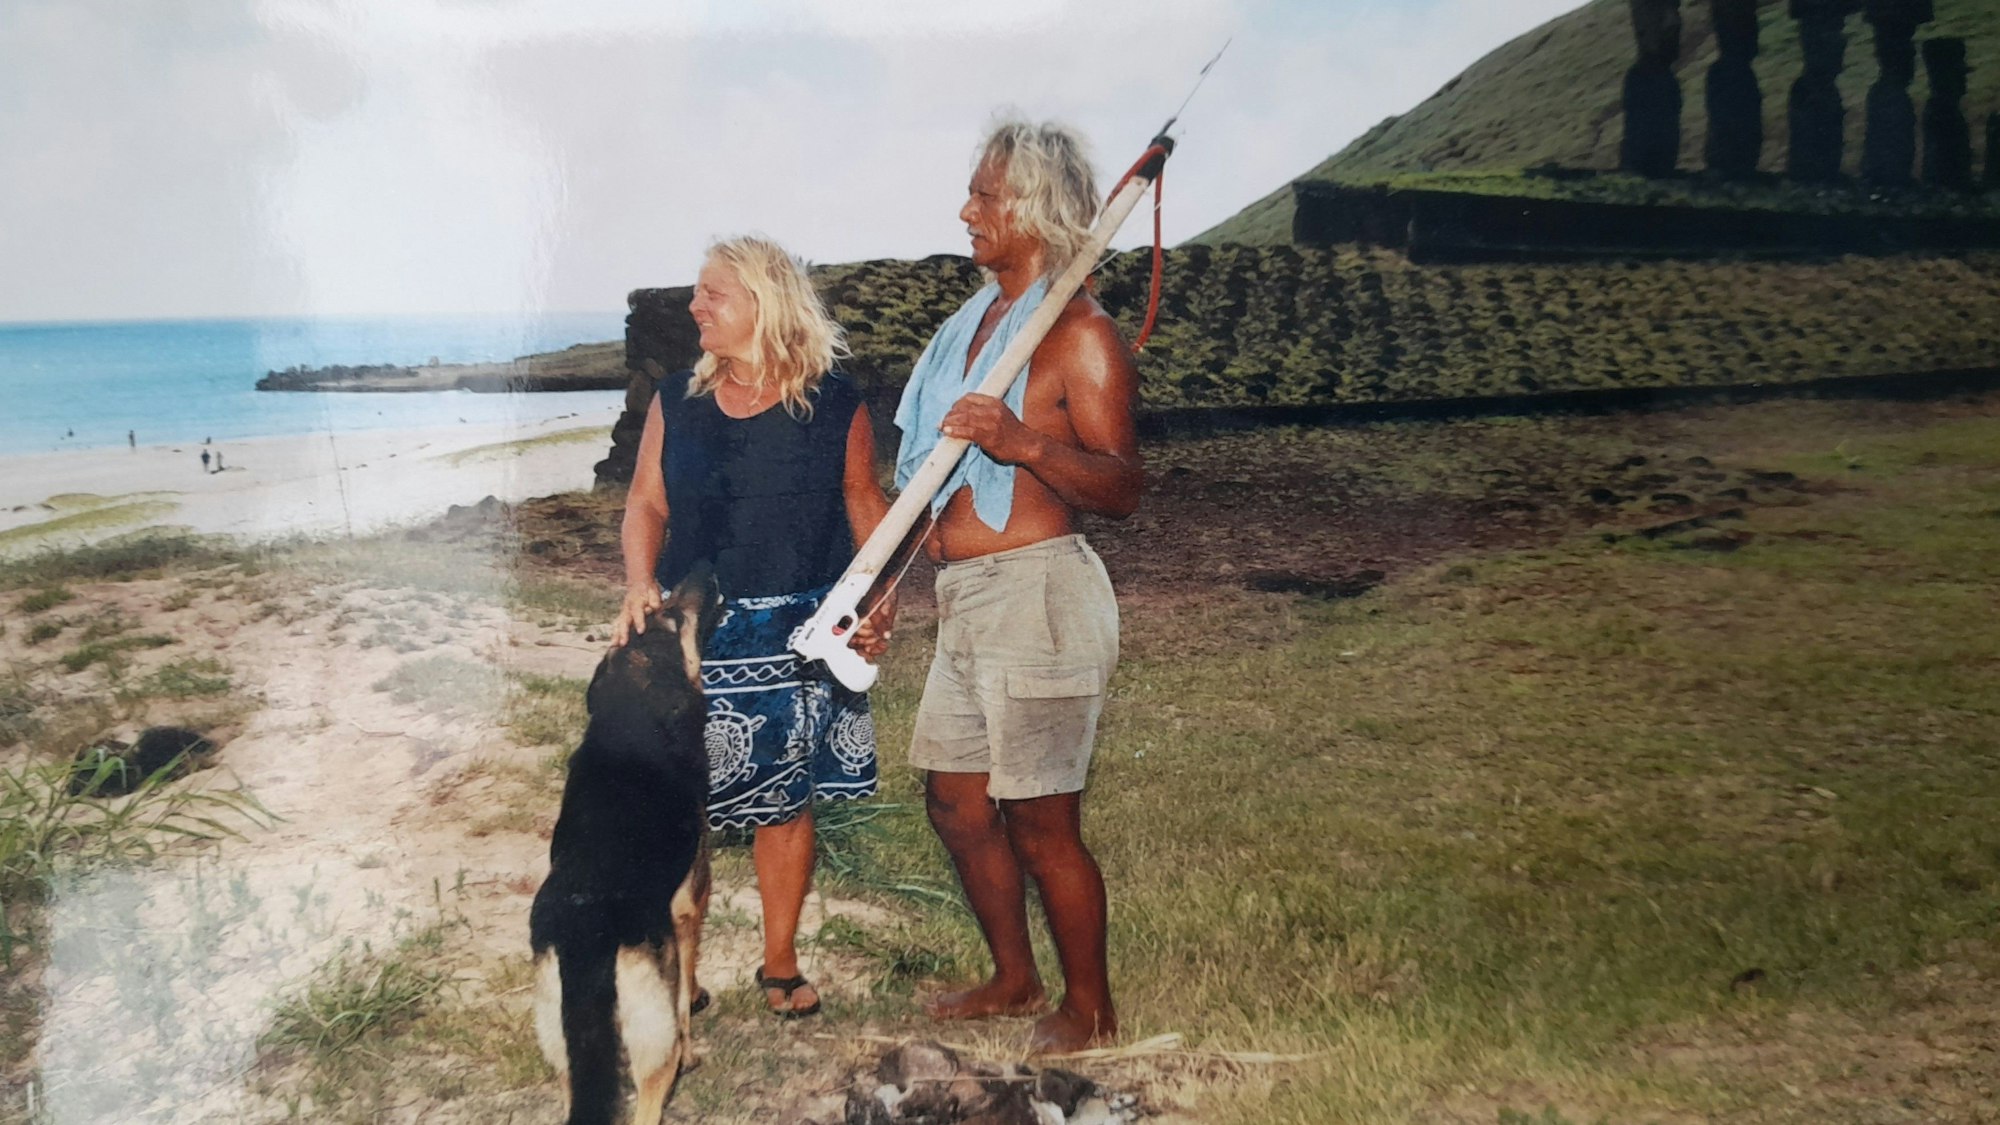 Stephanie Pauly steht mit ihrem Partner Karlo und Hund vor einer Gebetsstätte. Im Hintergrund der Strand. Karlo hat eine Harpune in der Hand.